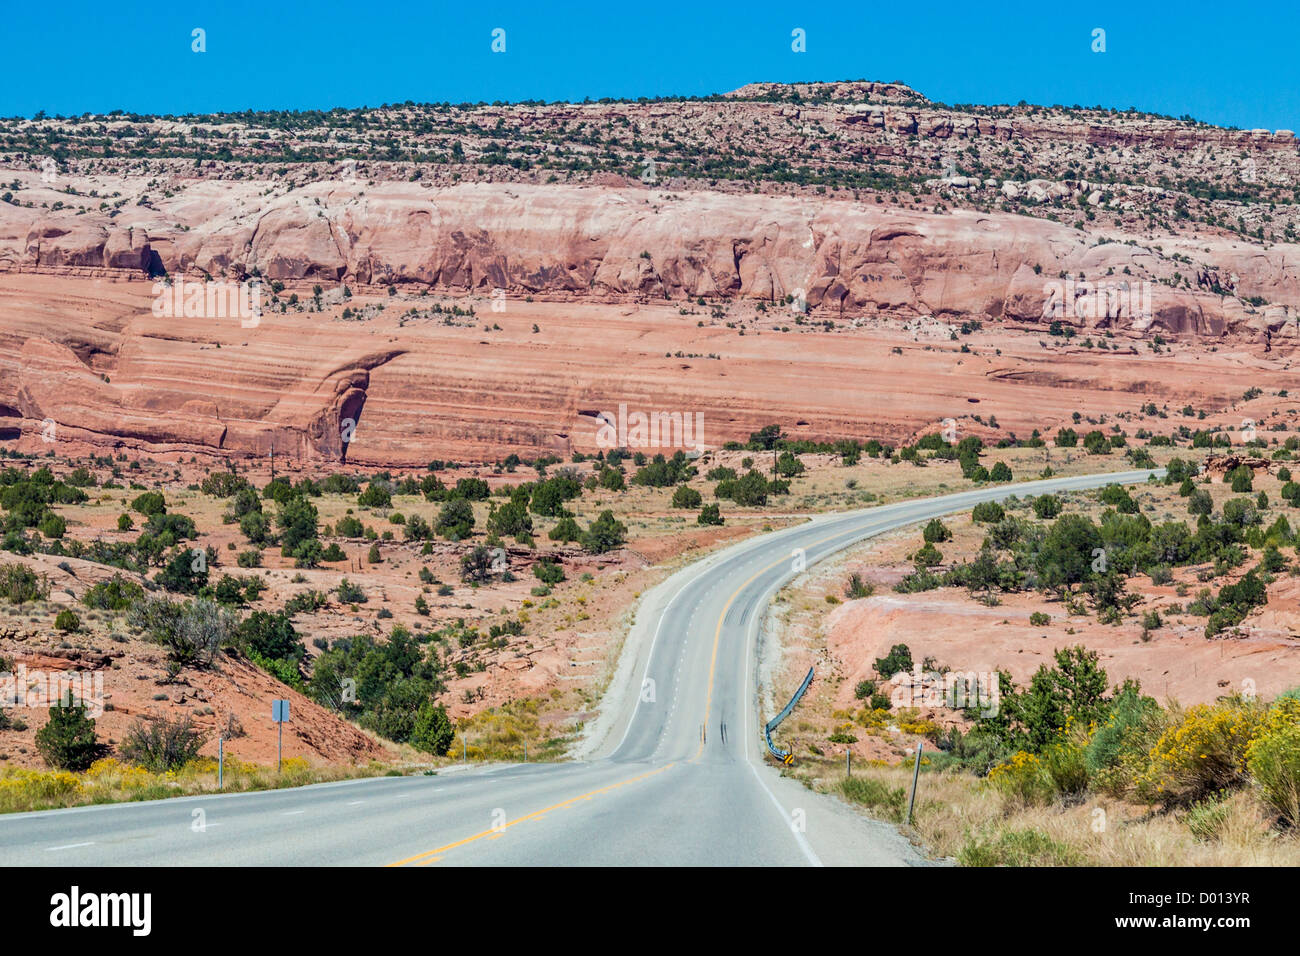 US 191 malerische Autobahn südlich von Moab, Utah, bekannt für bunte Sandstein Felsformationen. Stockfoto